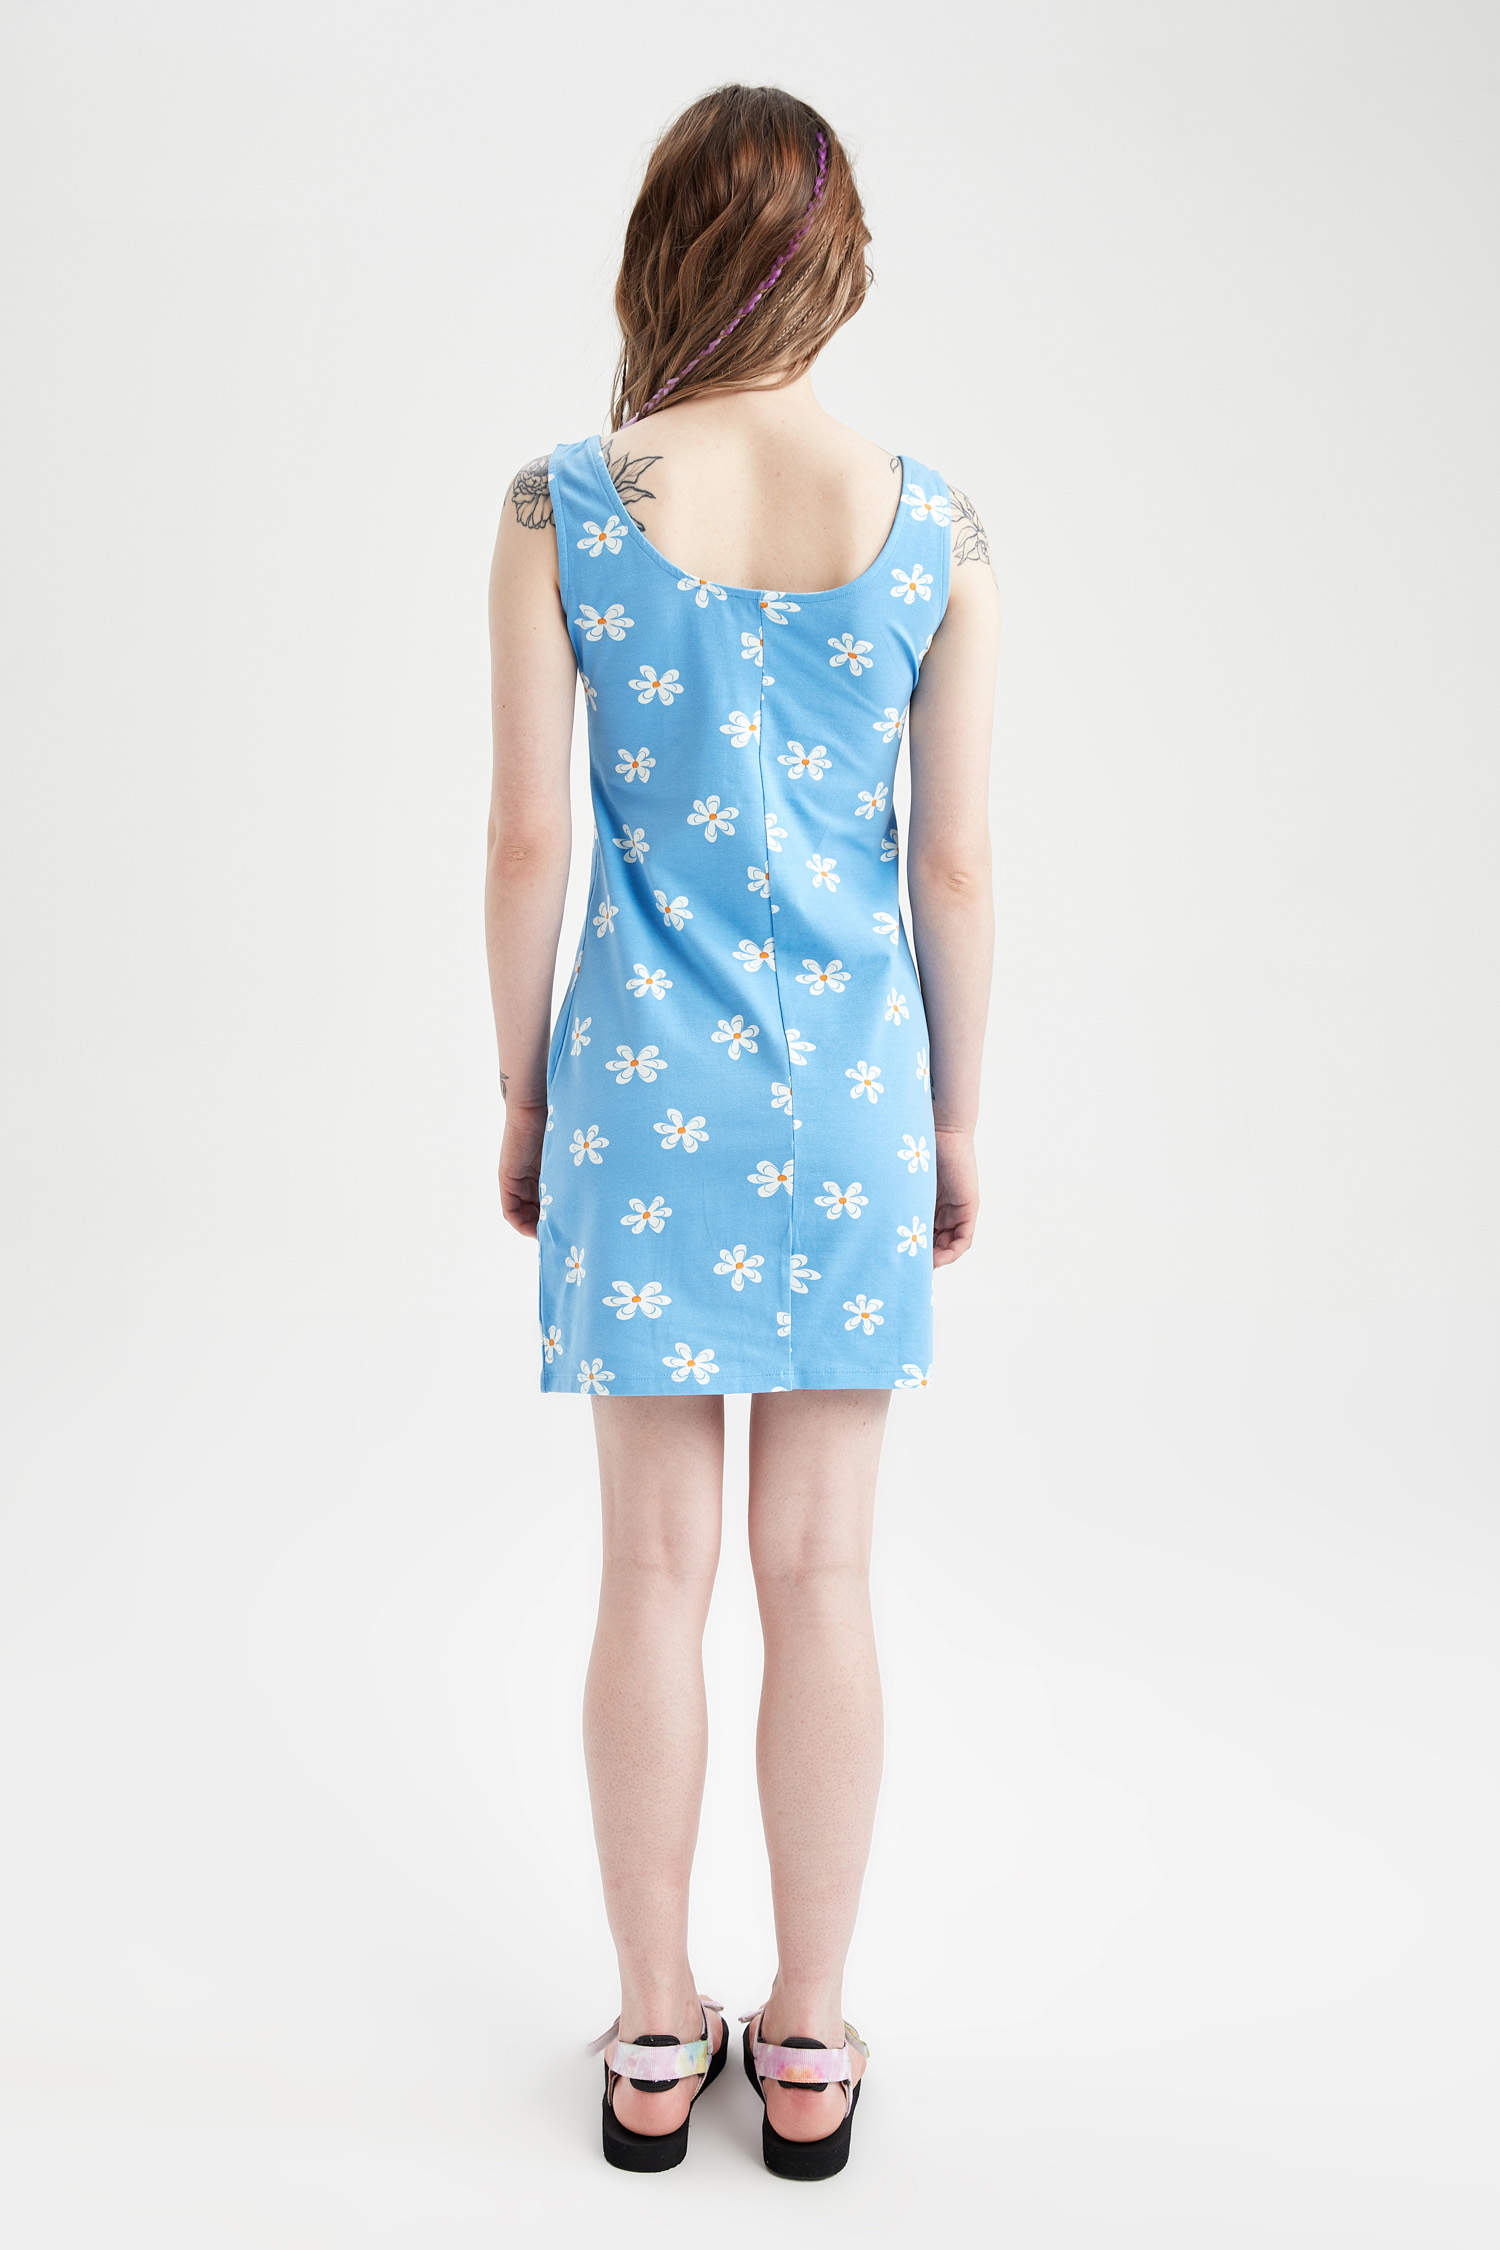 Defacto Coool Bodycon Kare Yaka Çiçek Desenli Yazlık Mini Elbise. 4